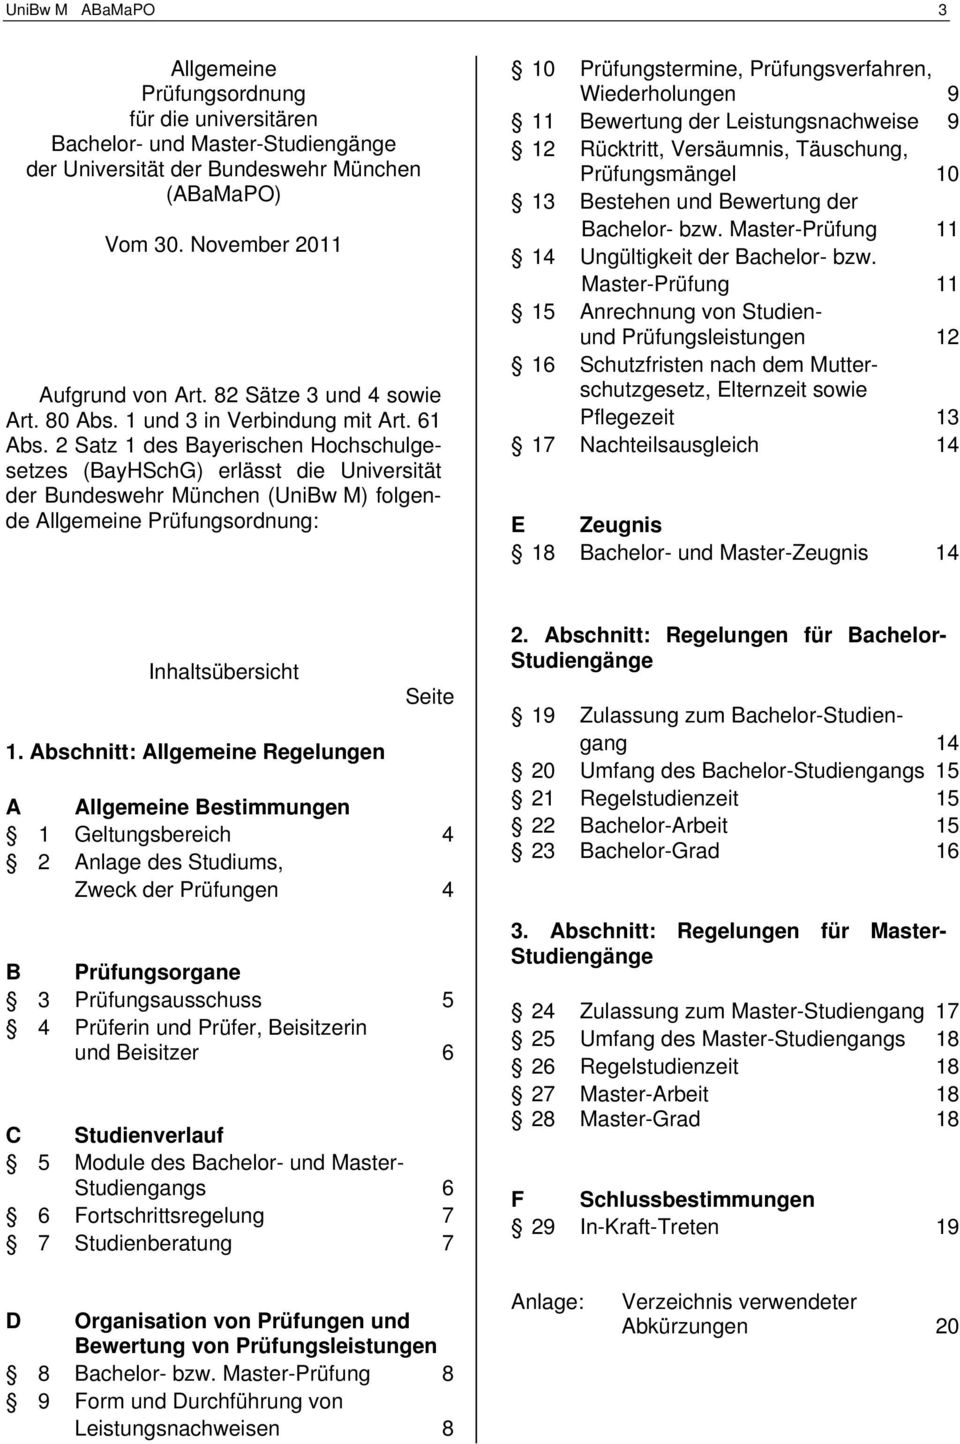 2 Satz 1 des Bayerischen Hochschulgesetzes (BayHSchG) erlässt die Universität der Bundeswehr München (UniBw M) folgende Allgemeine Prüfungsordnung: 10 Prüfungstermine, Prüfungsverfahren,